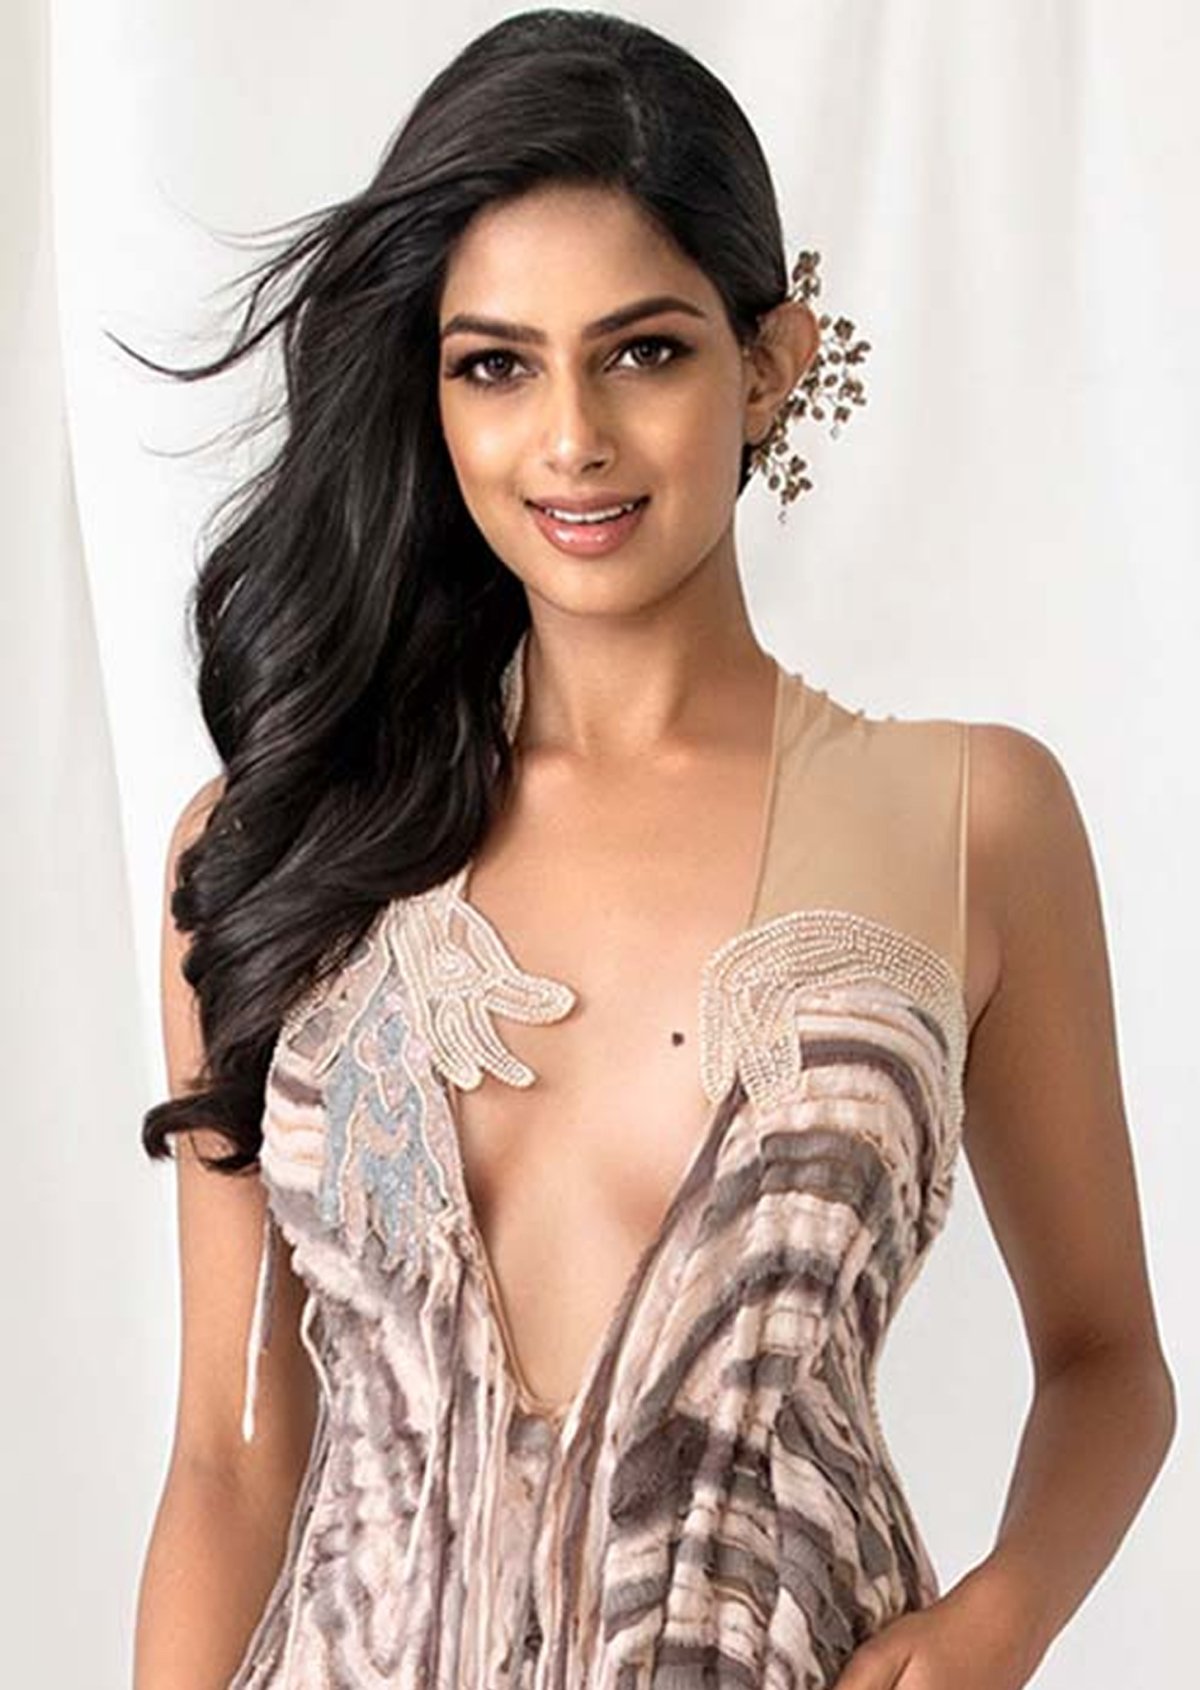 Chân dung Tân Miss Universe 2021 Harnaaz Sandhu: Học vấn cao ngất, là diễn viên nổi tiếng ở quê nhà - Ảnh 8